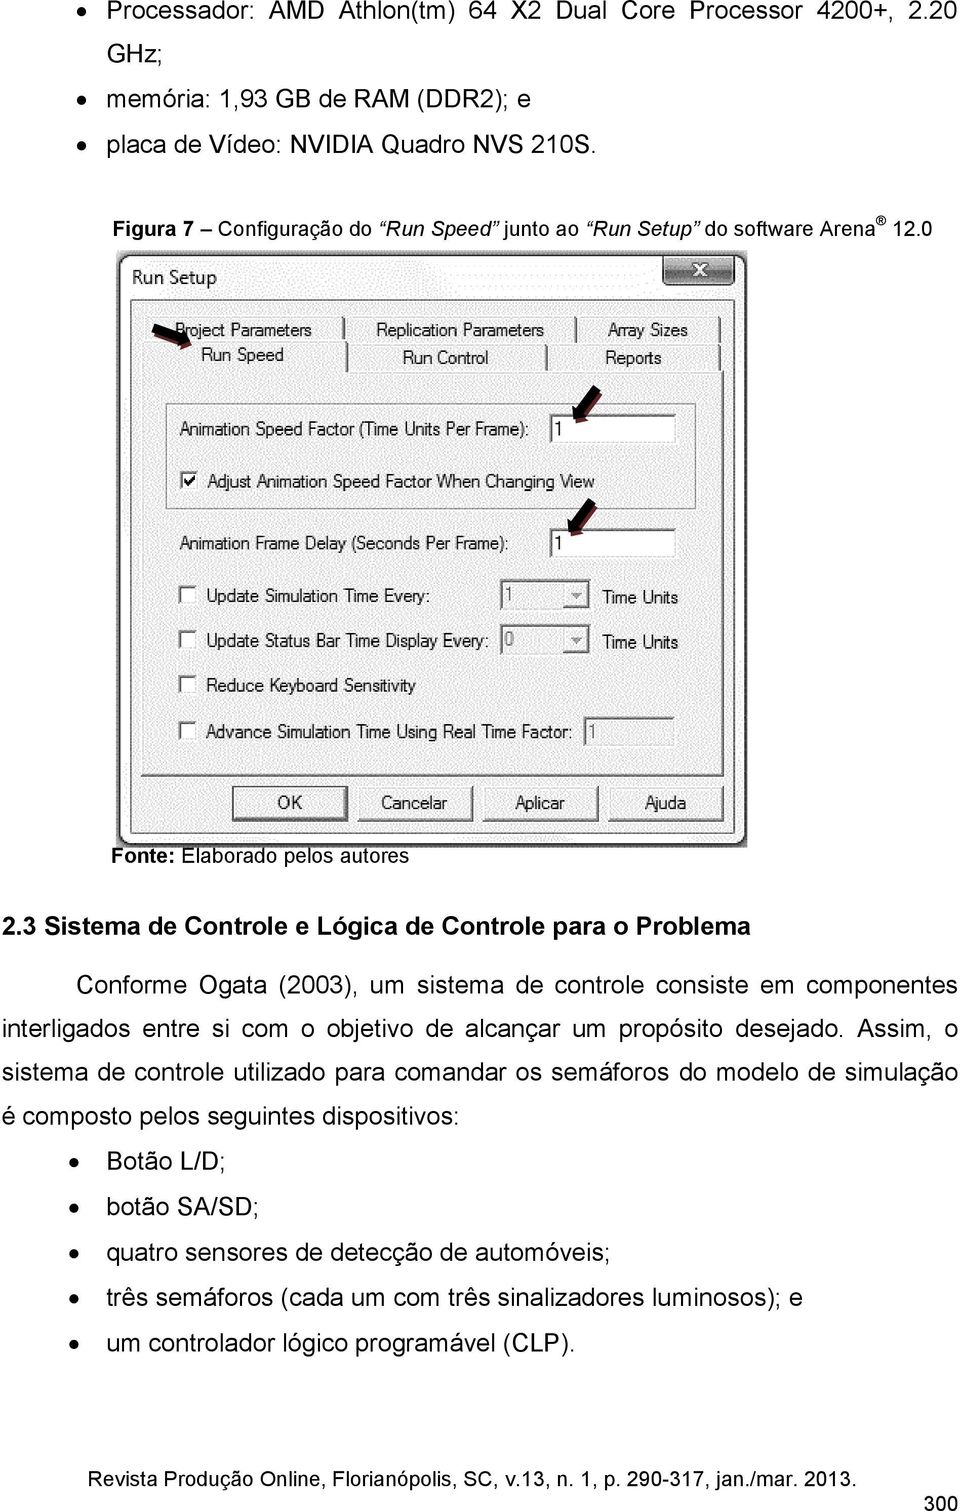 3 Sistema de Controle e Lógica de Controle para o Problema Conforme Ogata (2003), um sistema de controle consiste em componentes interligados entre si com o objetivo de alcançar um